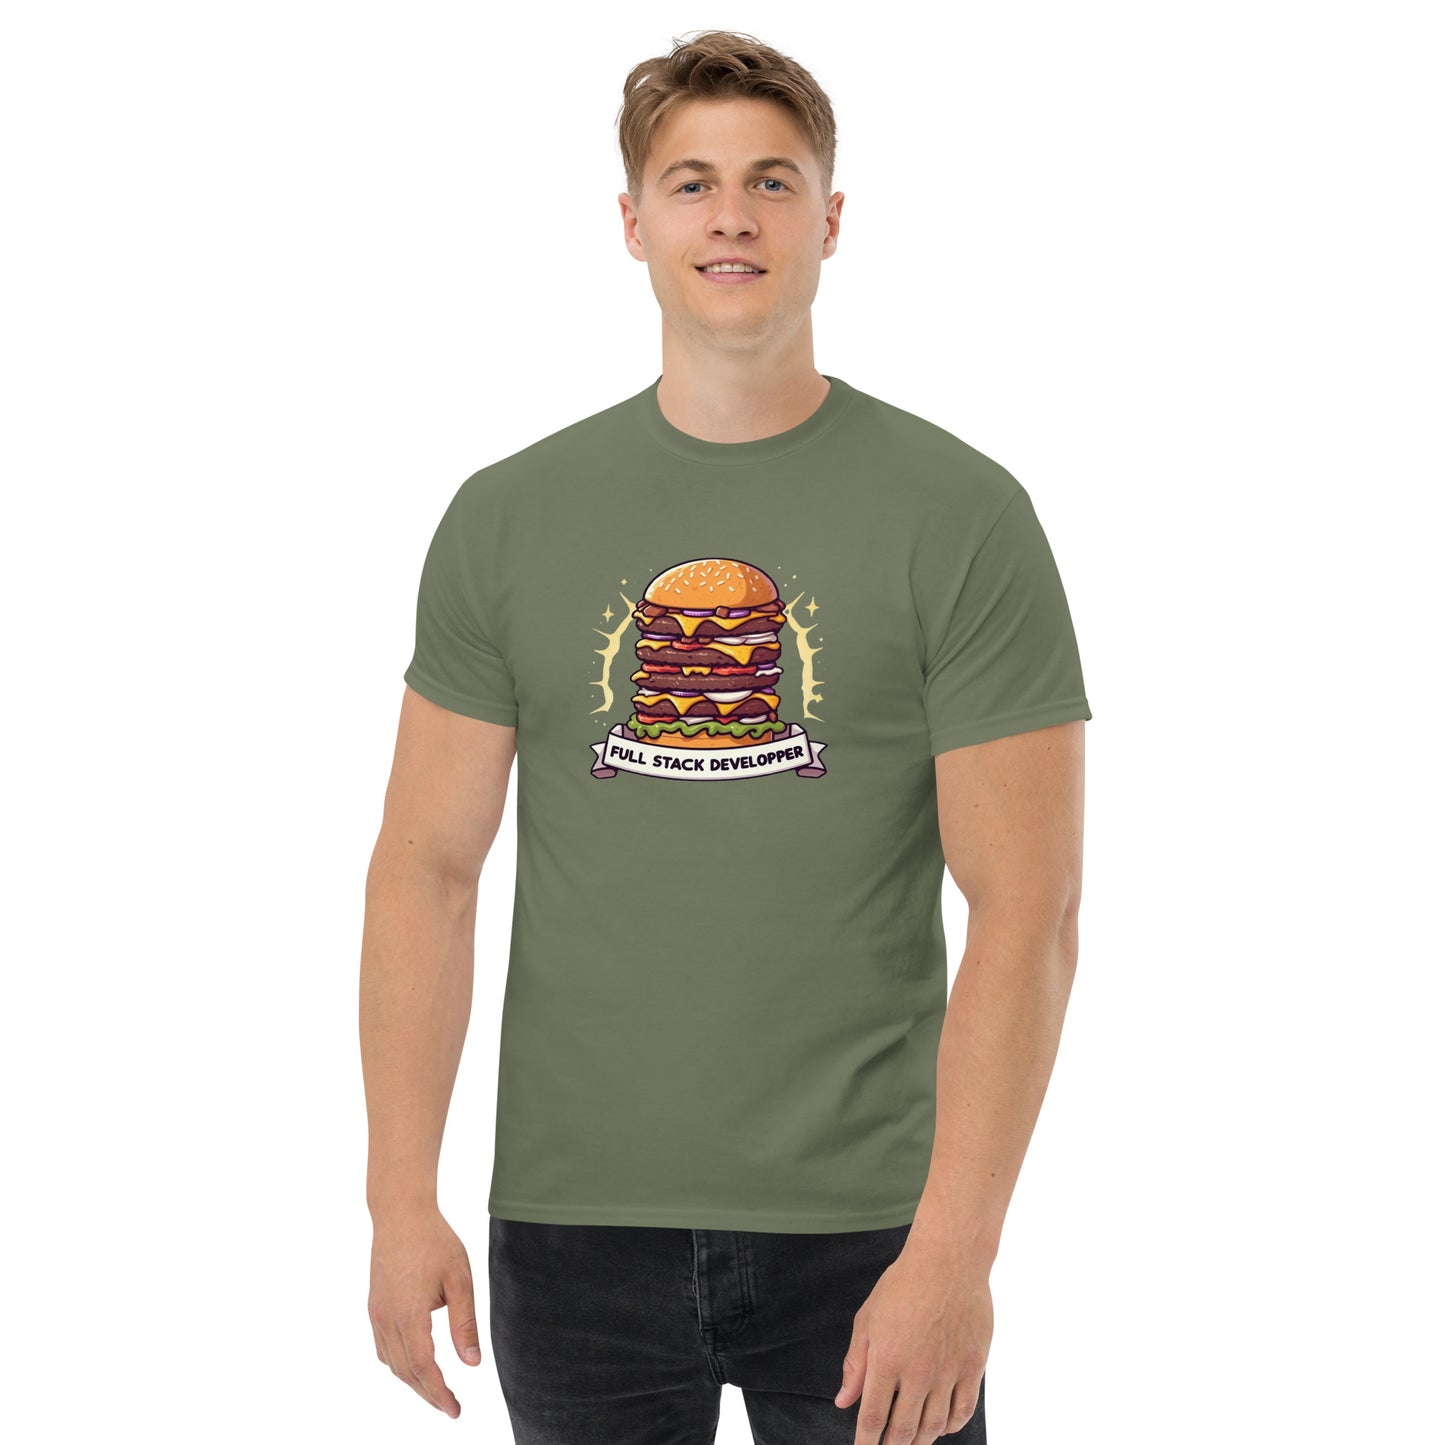 .Burgers Full Stacker tee - Dark